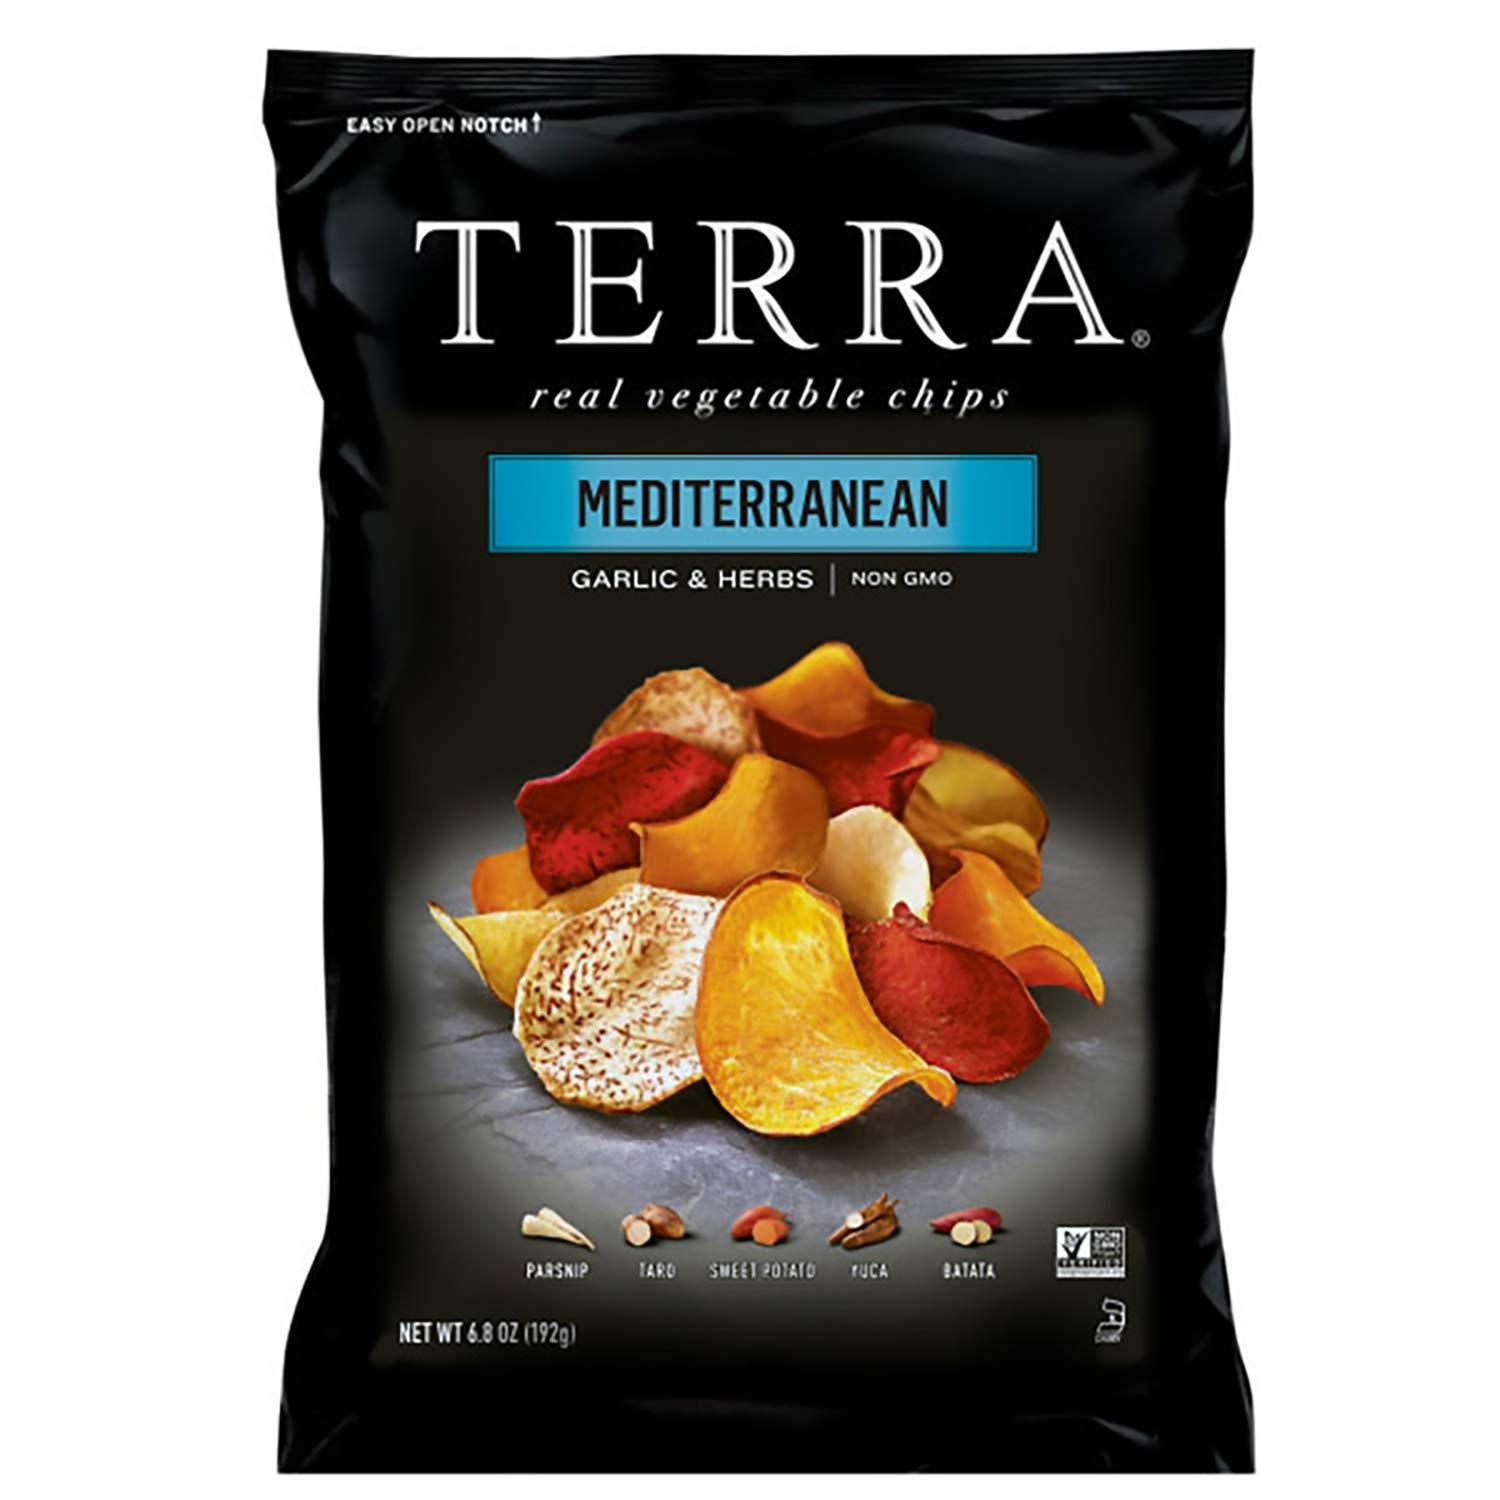 Terra Mediterranean Vegetable Chips for $2.77 Shipped